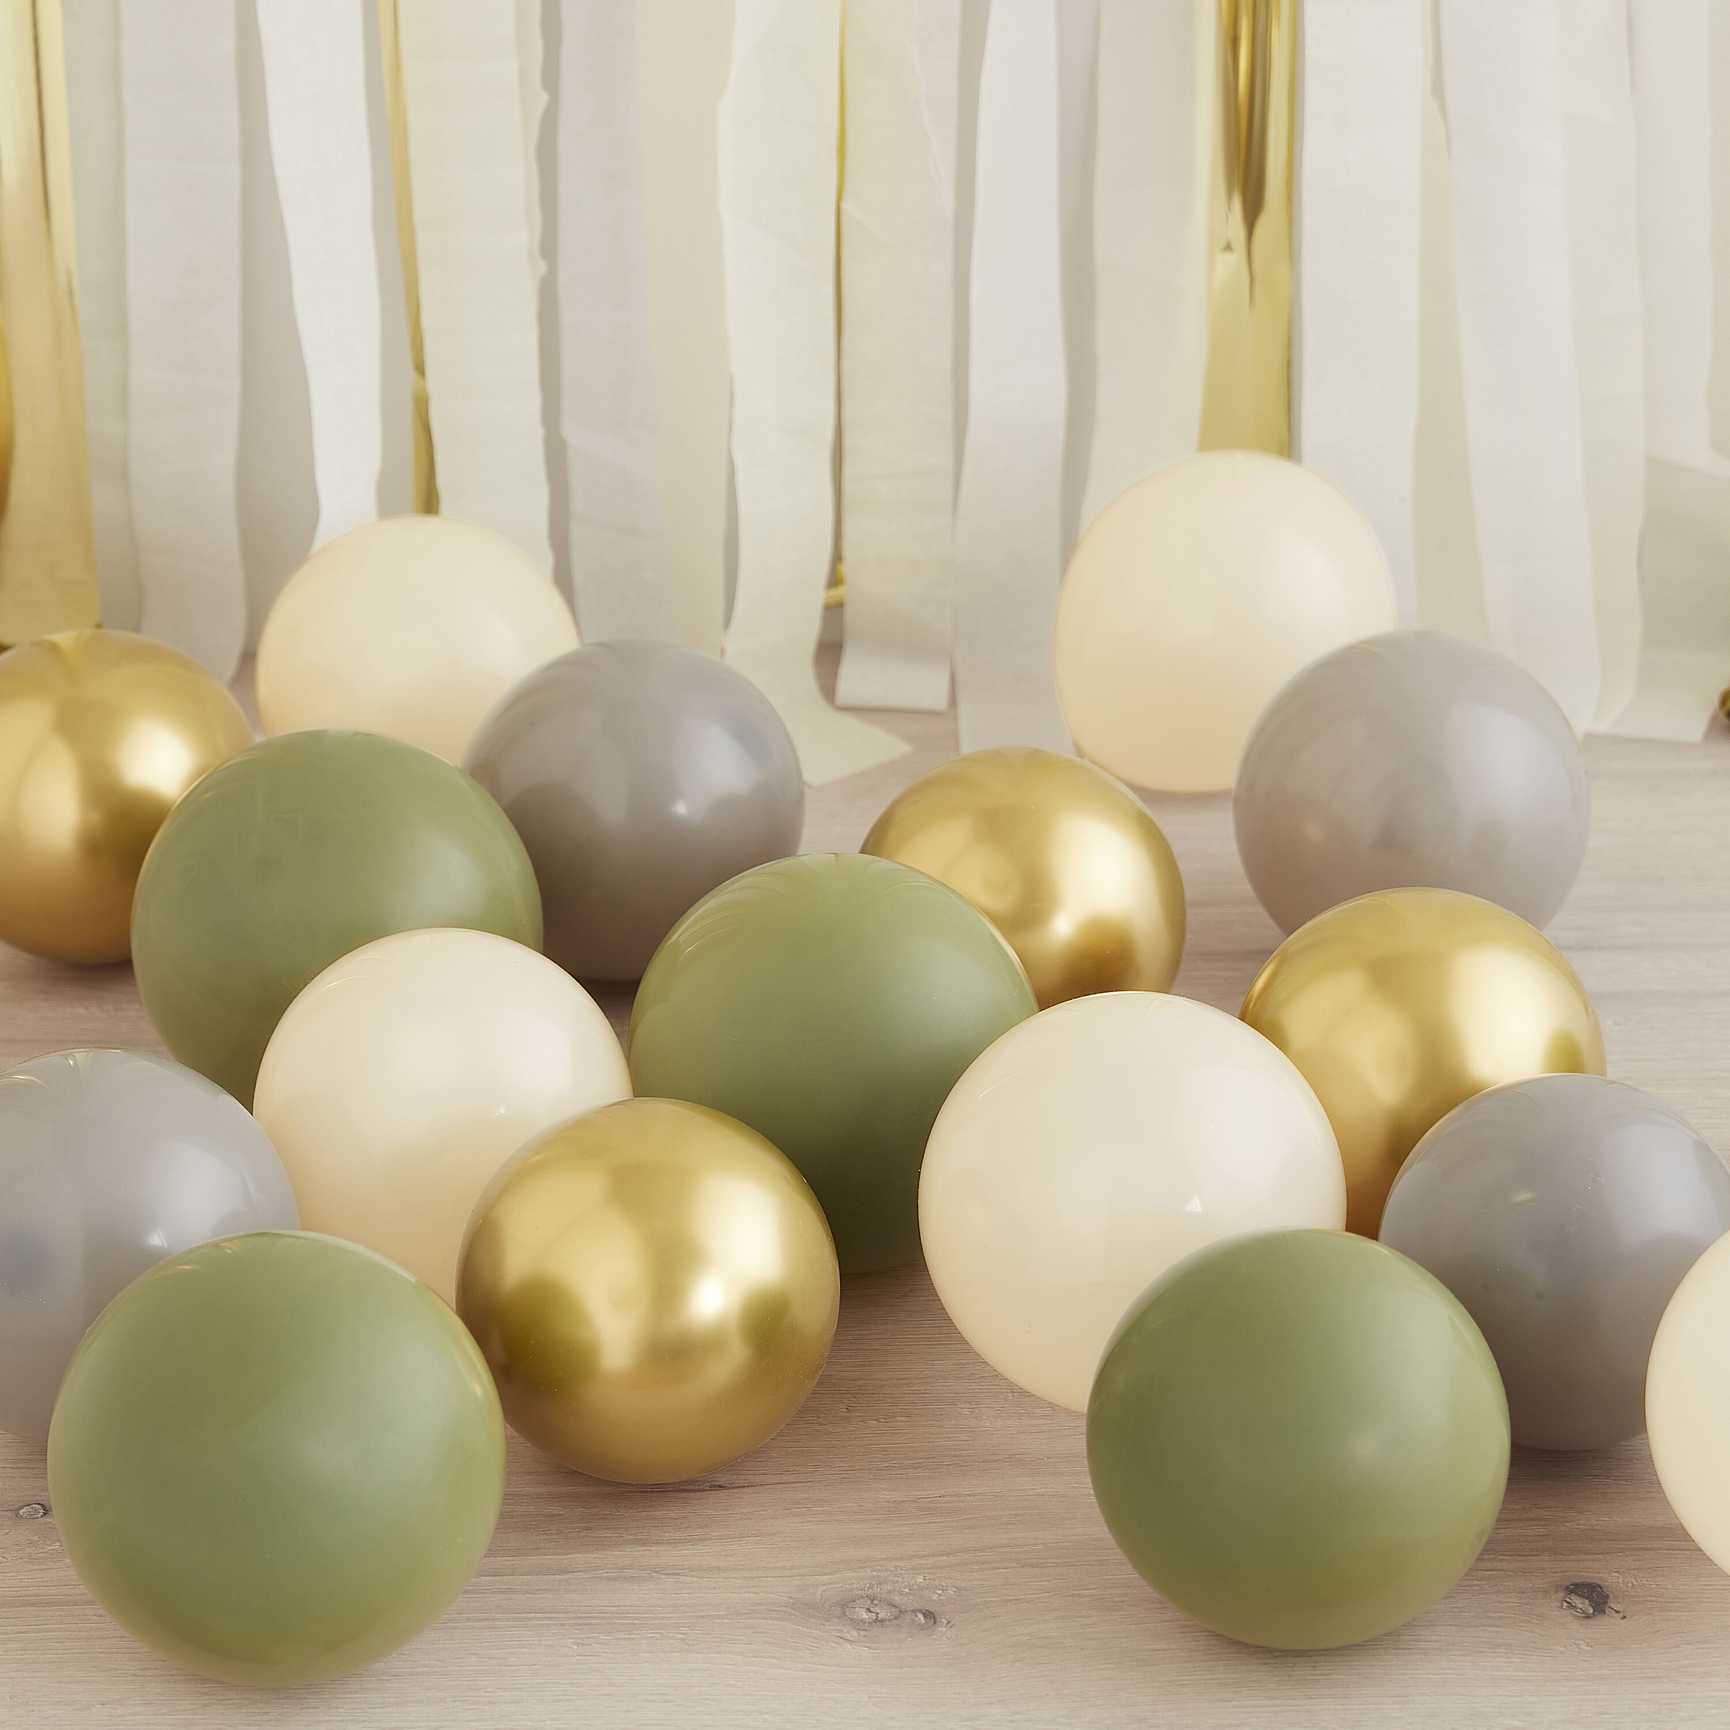 Luftballonpaket in goldchrom, olivgrün, nude und grau